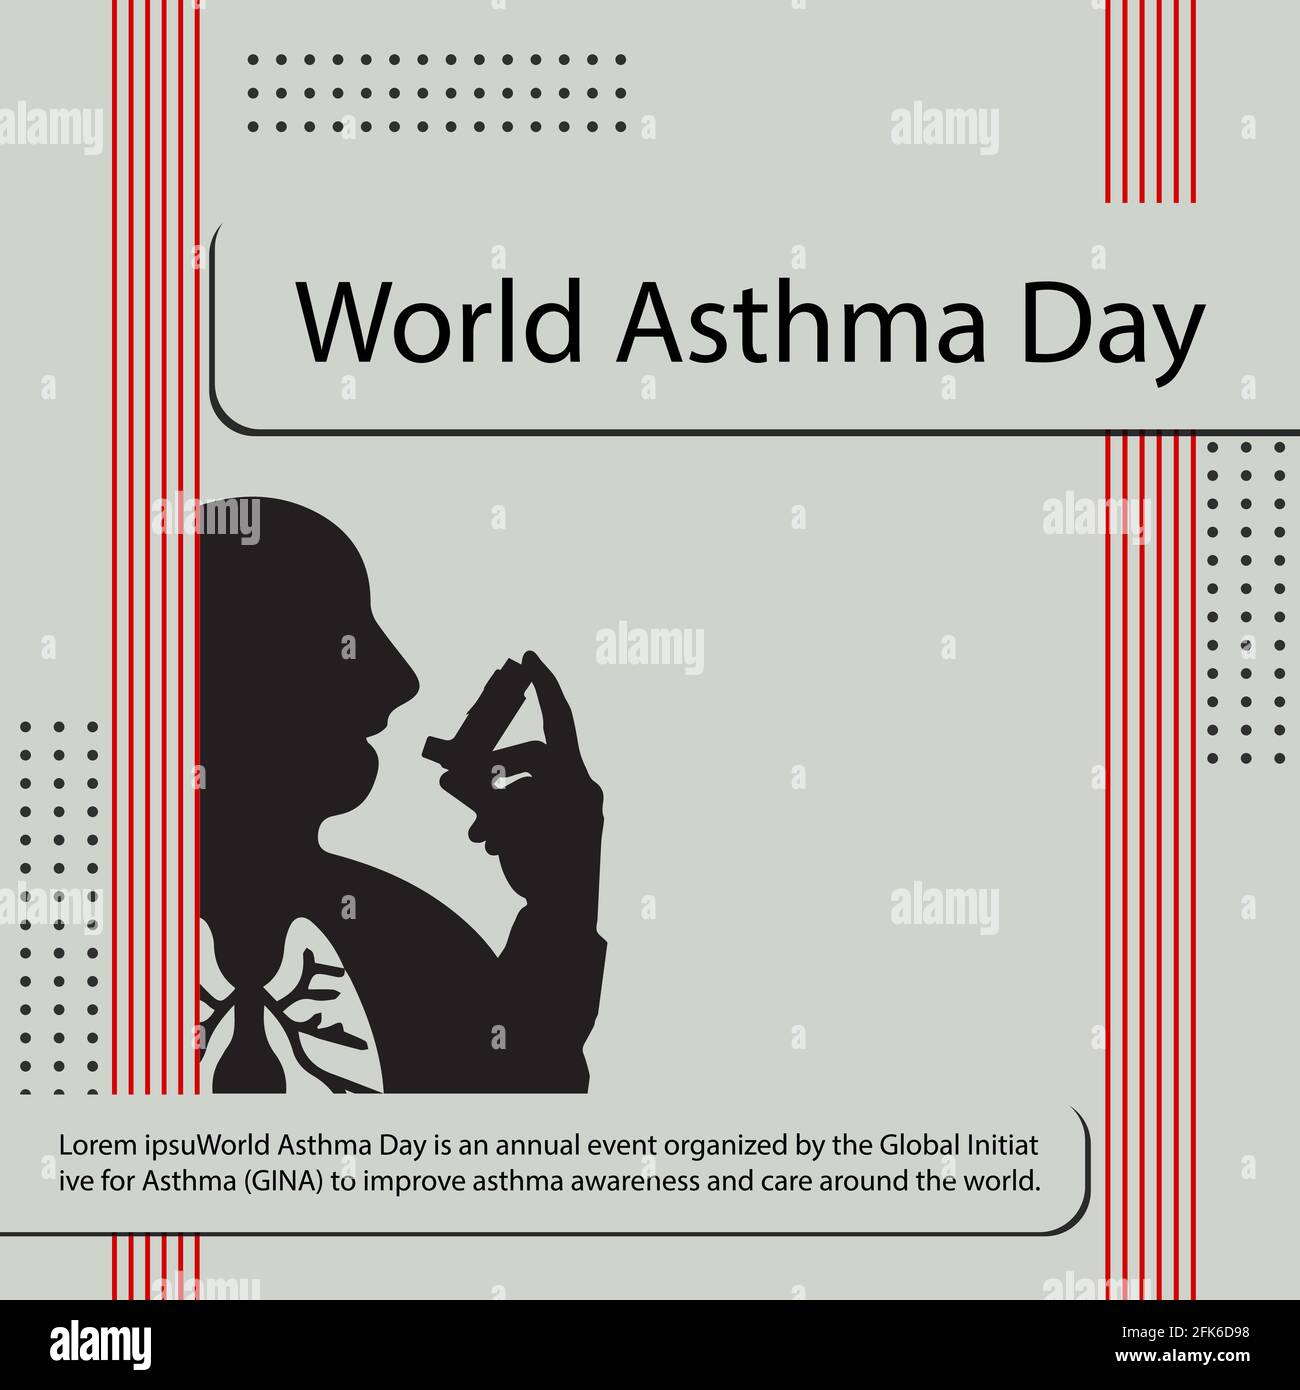 Der Welt-Asthmatag ist eine jährliche Veranstaltung, die von der Global Initiative for Asthma (GINA) organisiert wird, um das Asthmabewusstsein und die Versorgung weltweit zu verbessern. Stock Vektor